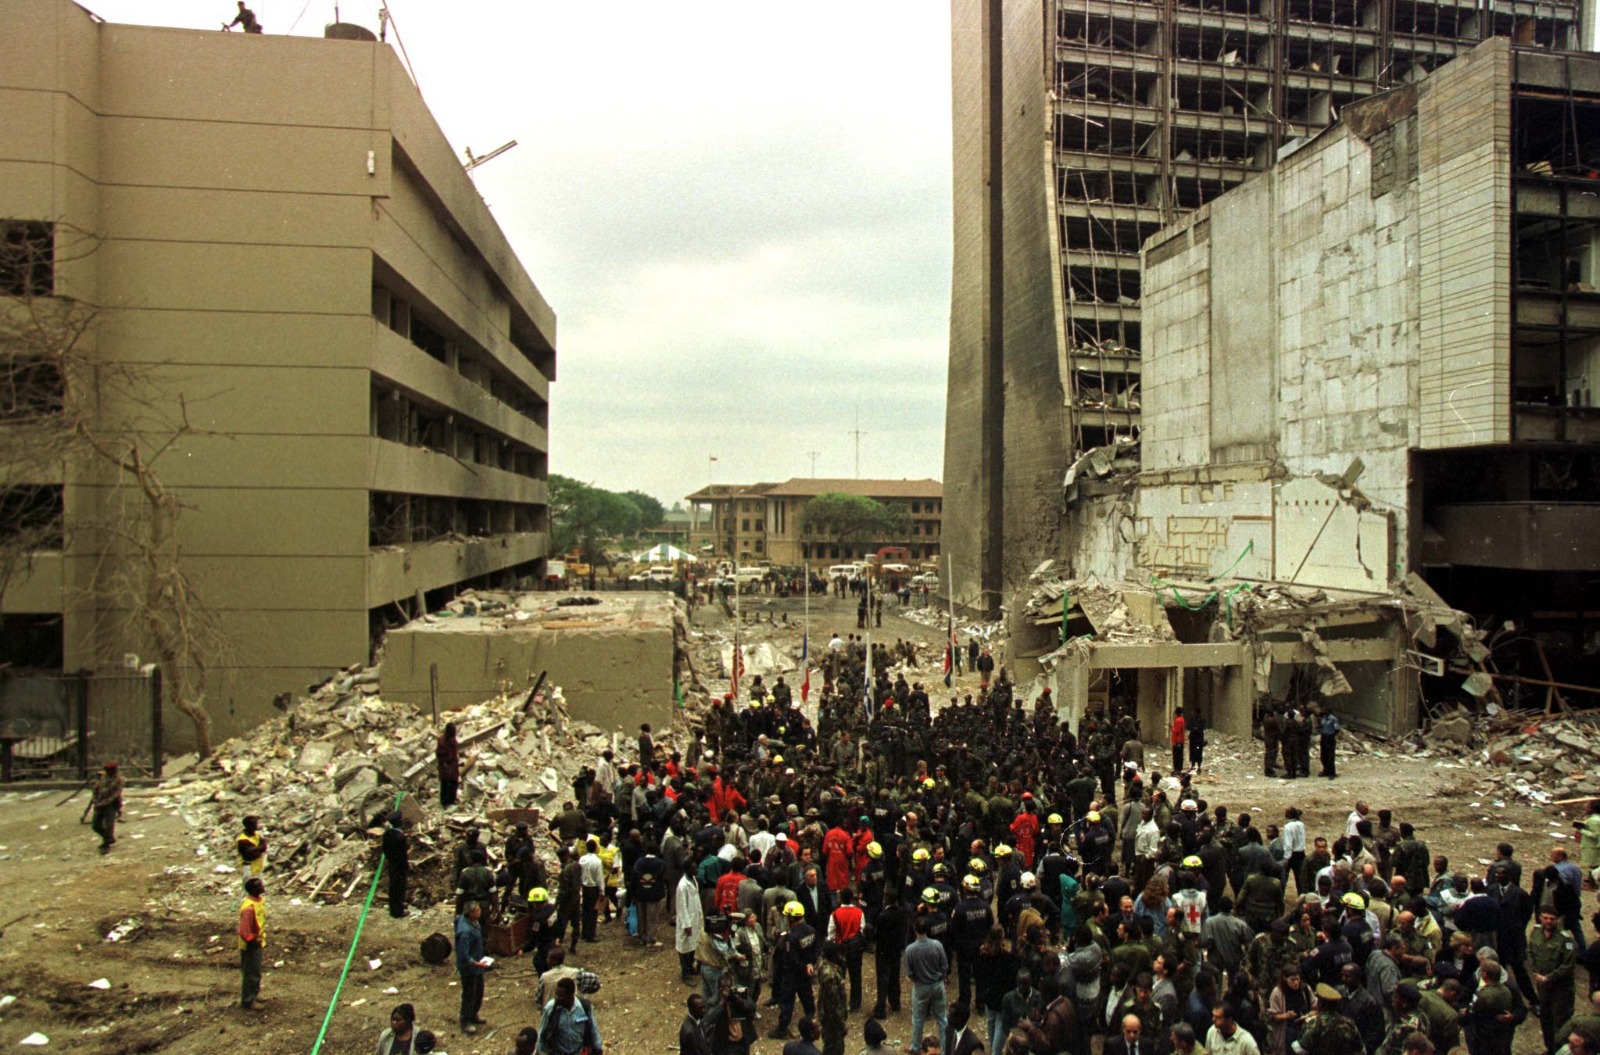 عدد من الأشخاص يجتمعون في موقع السفارة الأميركية في نيروبي التي تم استهدافها بقنابل إلى جانب السفارة الأميركية في دار السلام بتنزانيا. نيروبي، كينيا. 8 أغسطس 1998